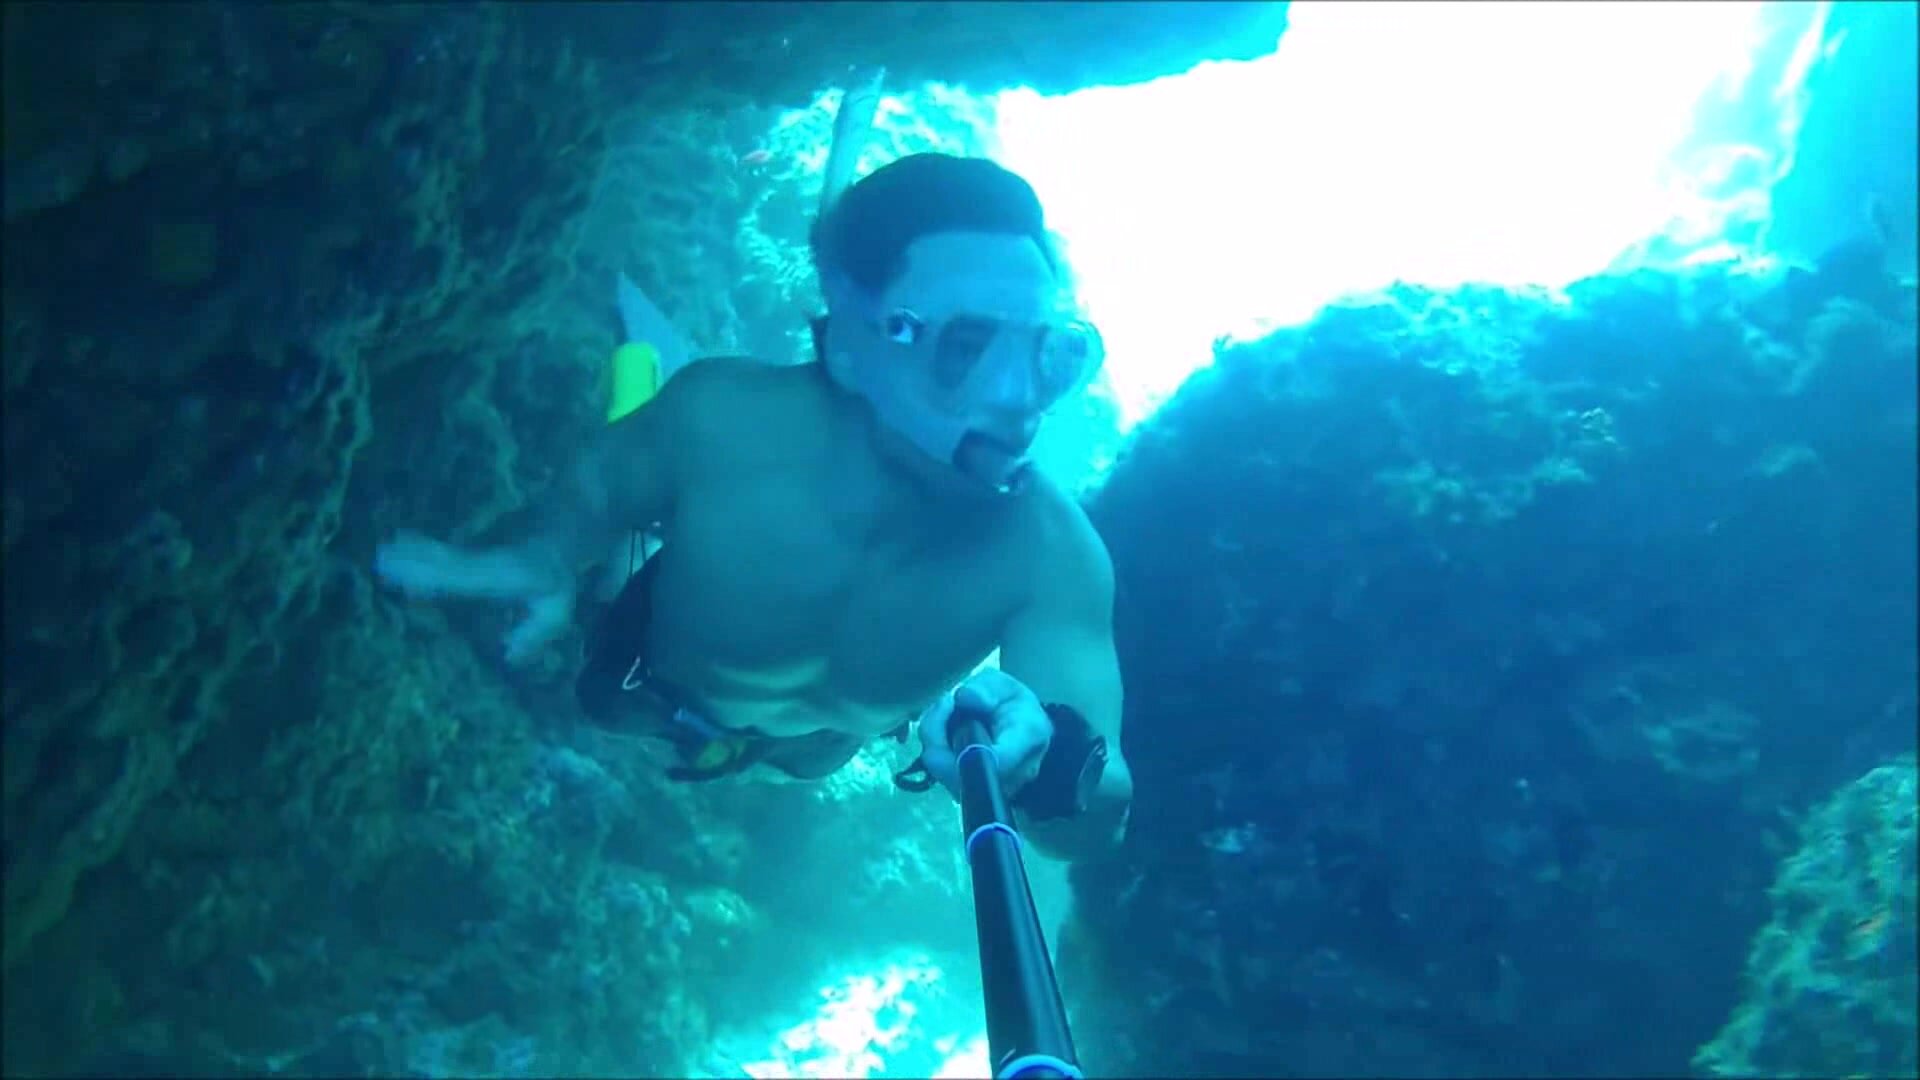 Fit freediver breatholding barechest underwater